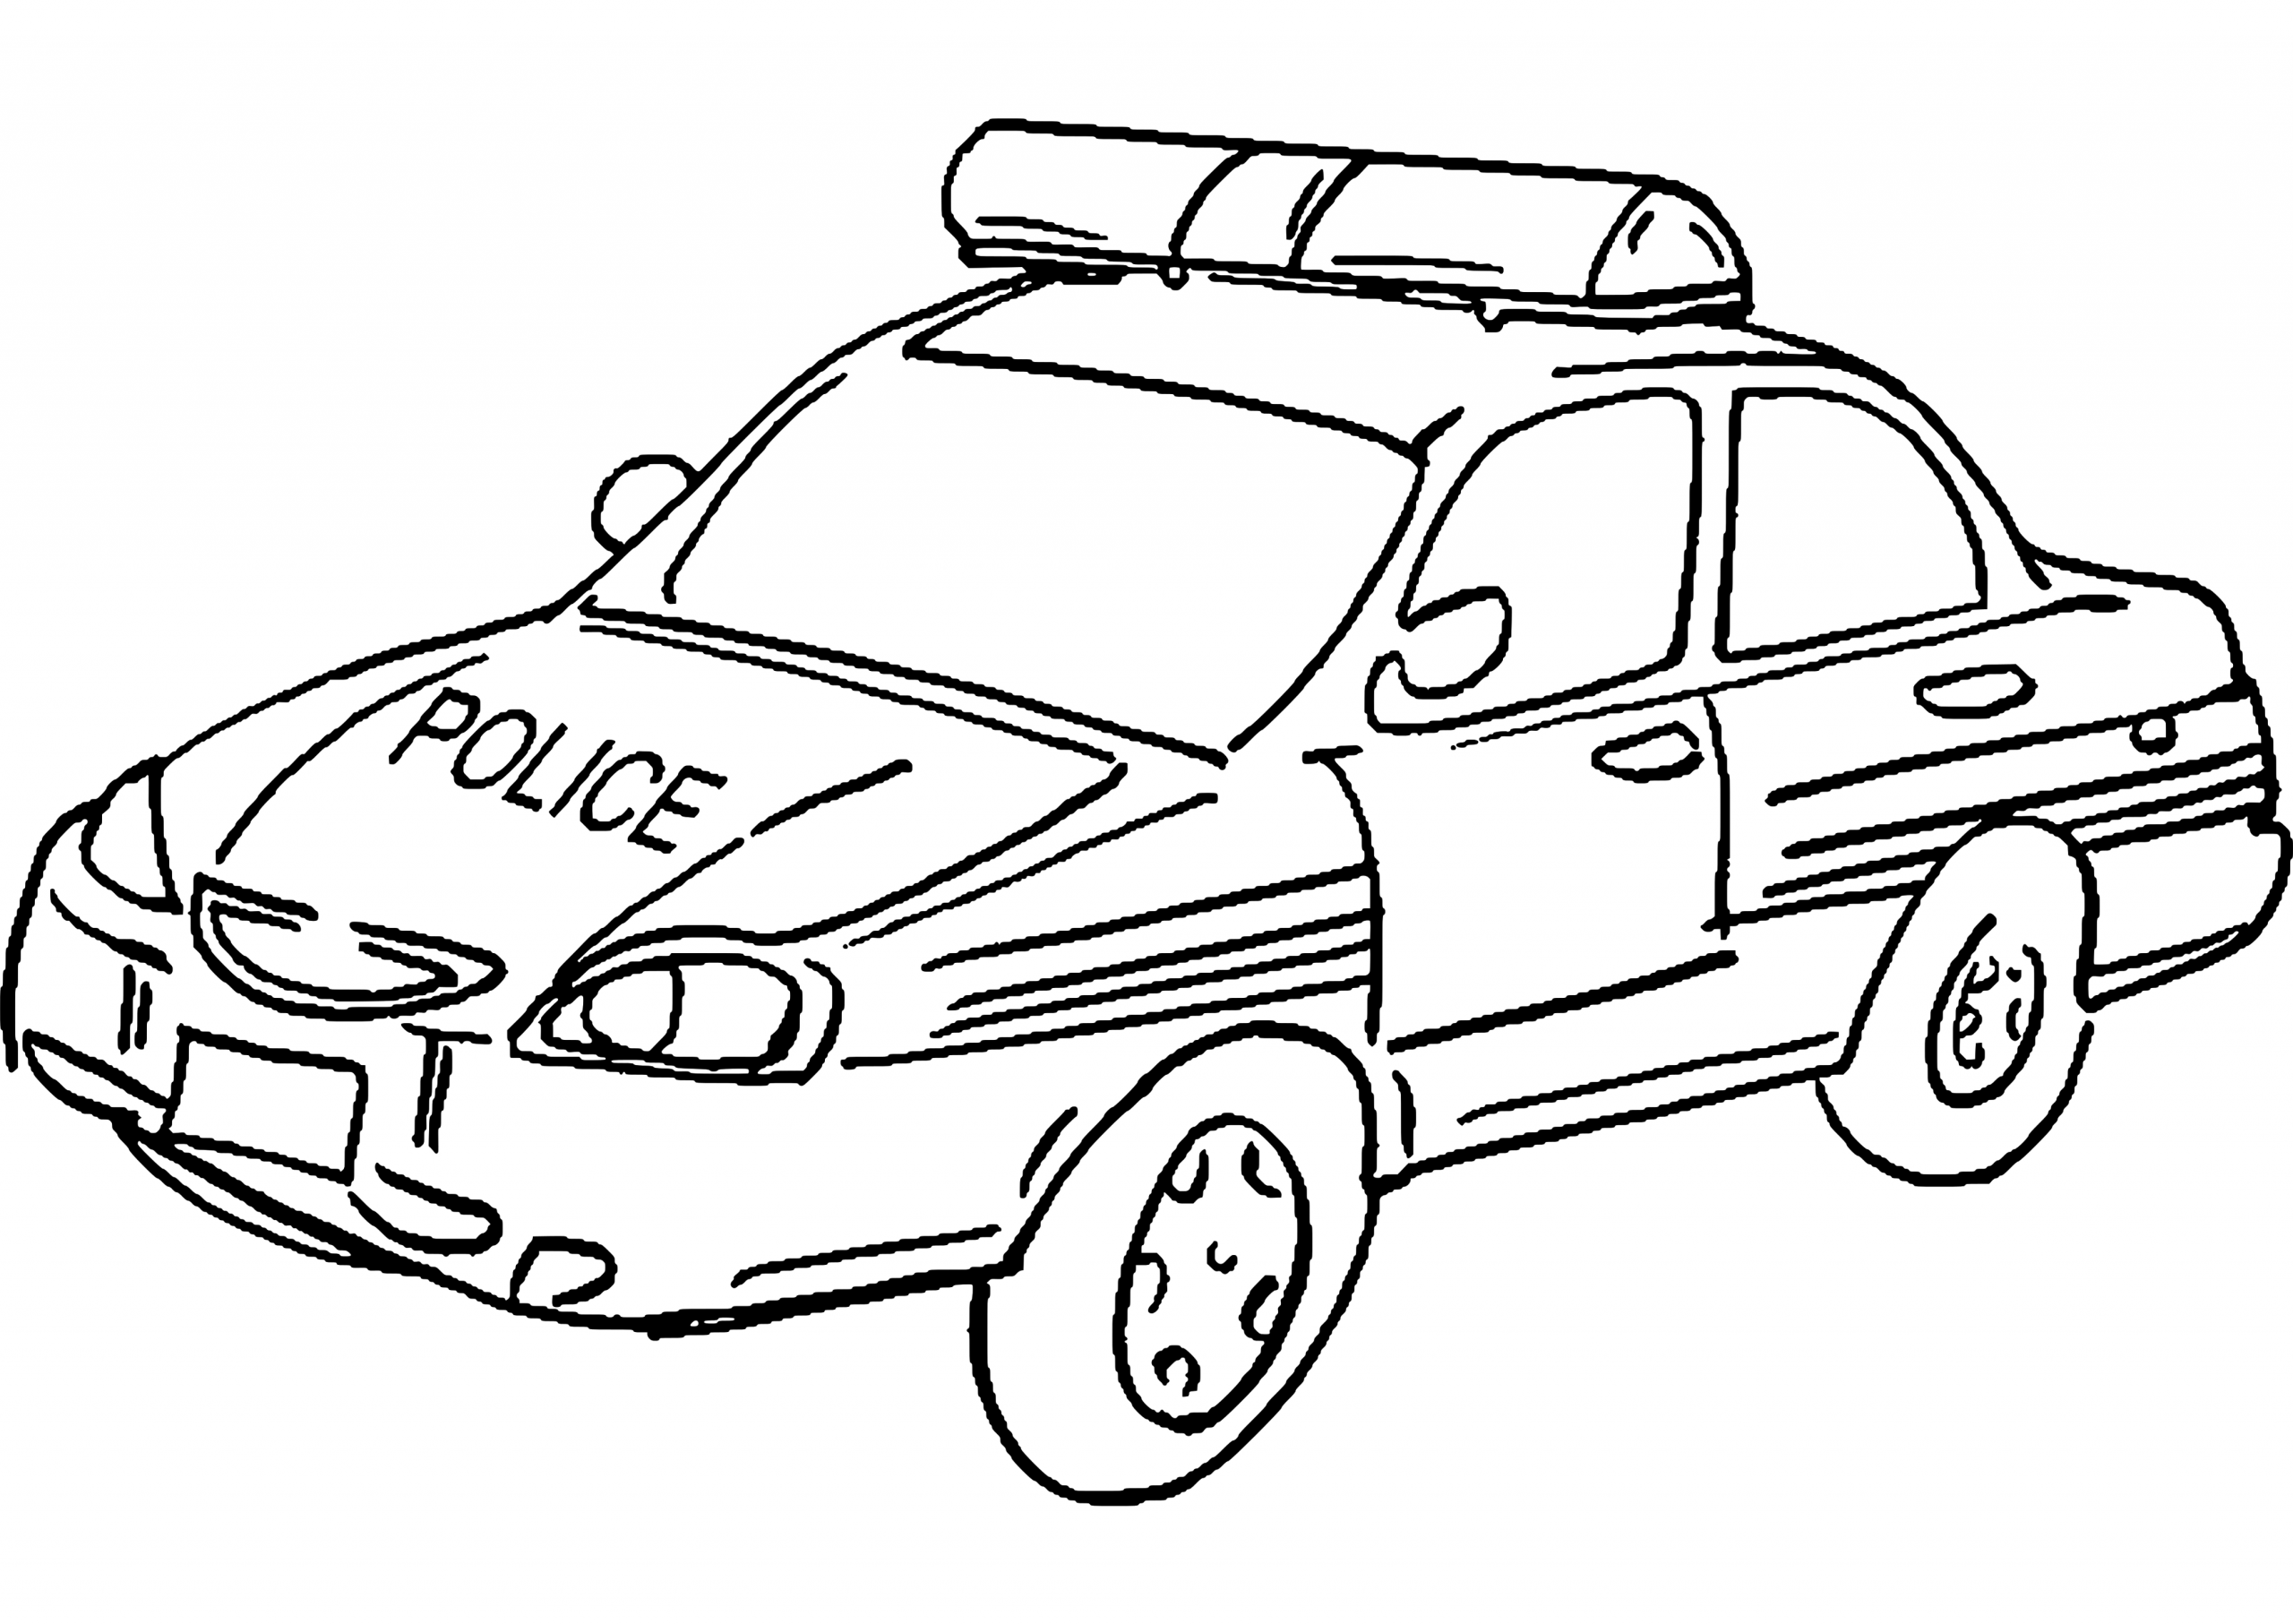 Voiture De Police #10 (Transport) – Coloriages À Imprimer intérieur Coloriage Vehicule